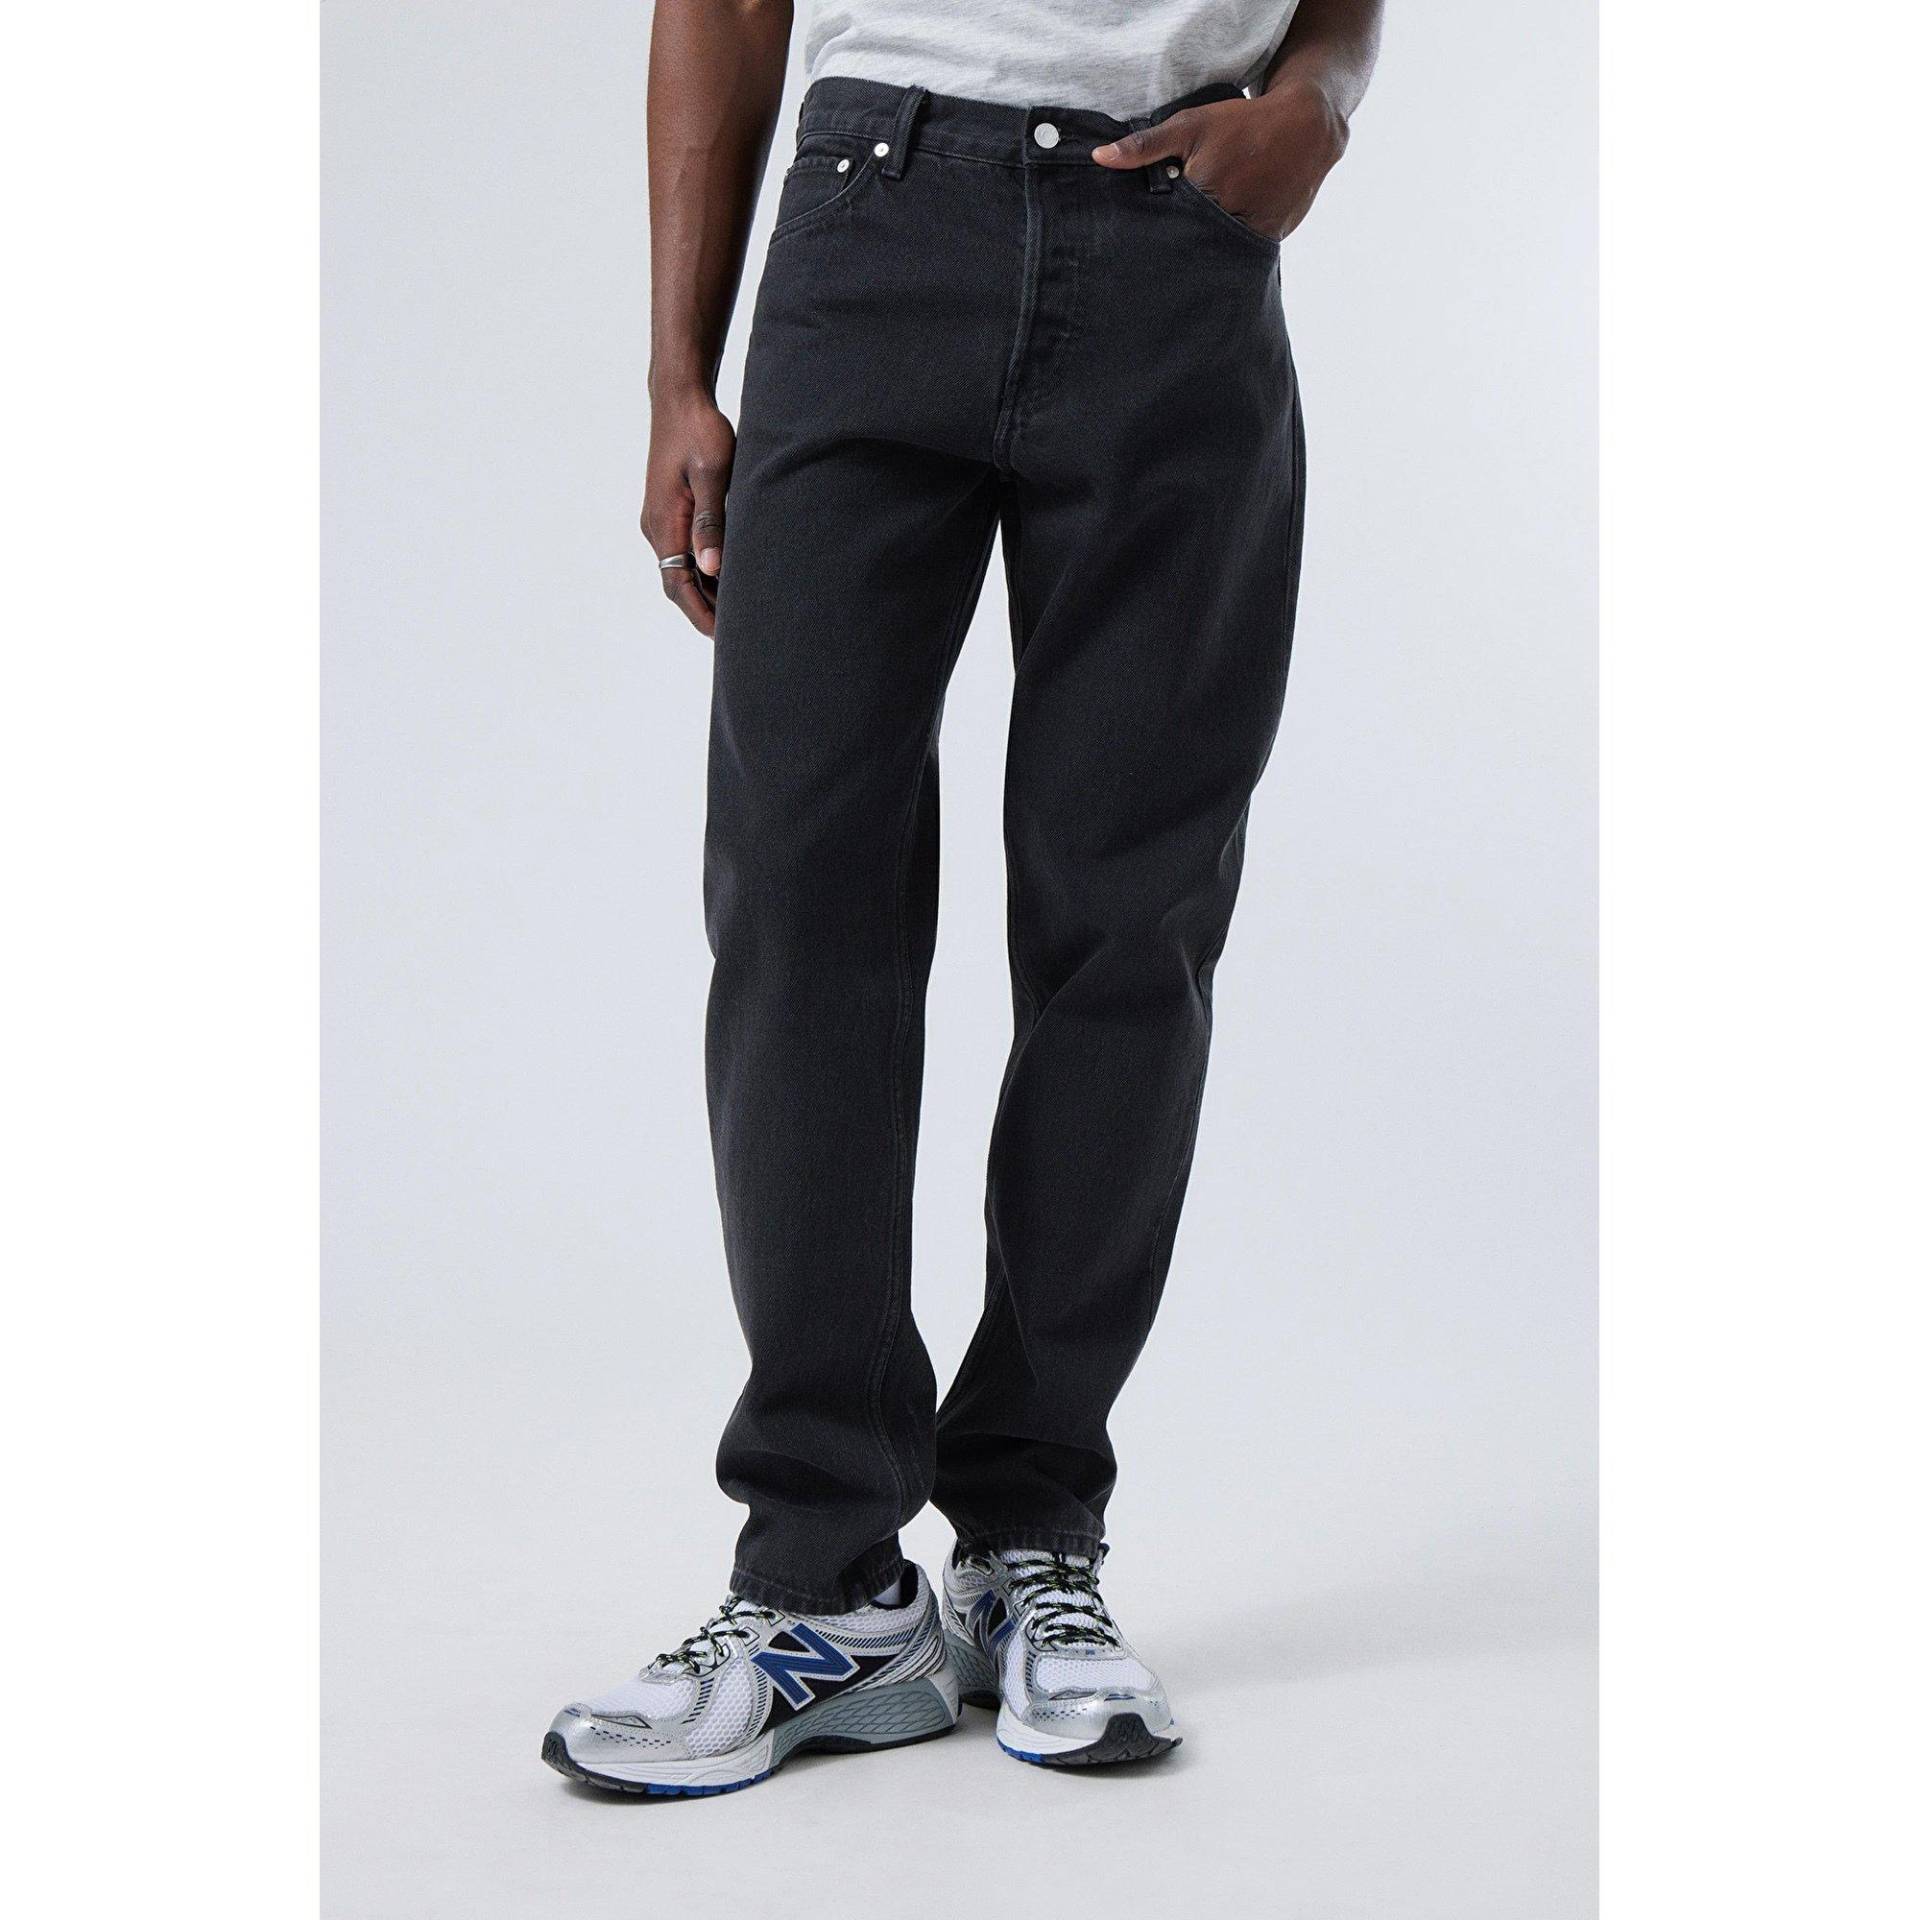 Jeans, Tapered Fit Herren Black L30/W33 von WEEKDAY